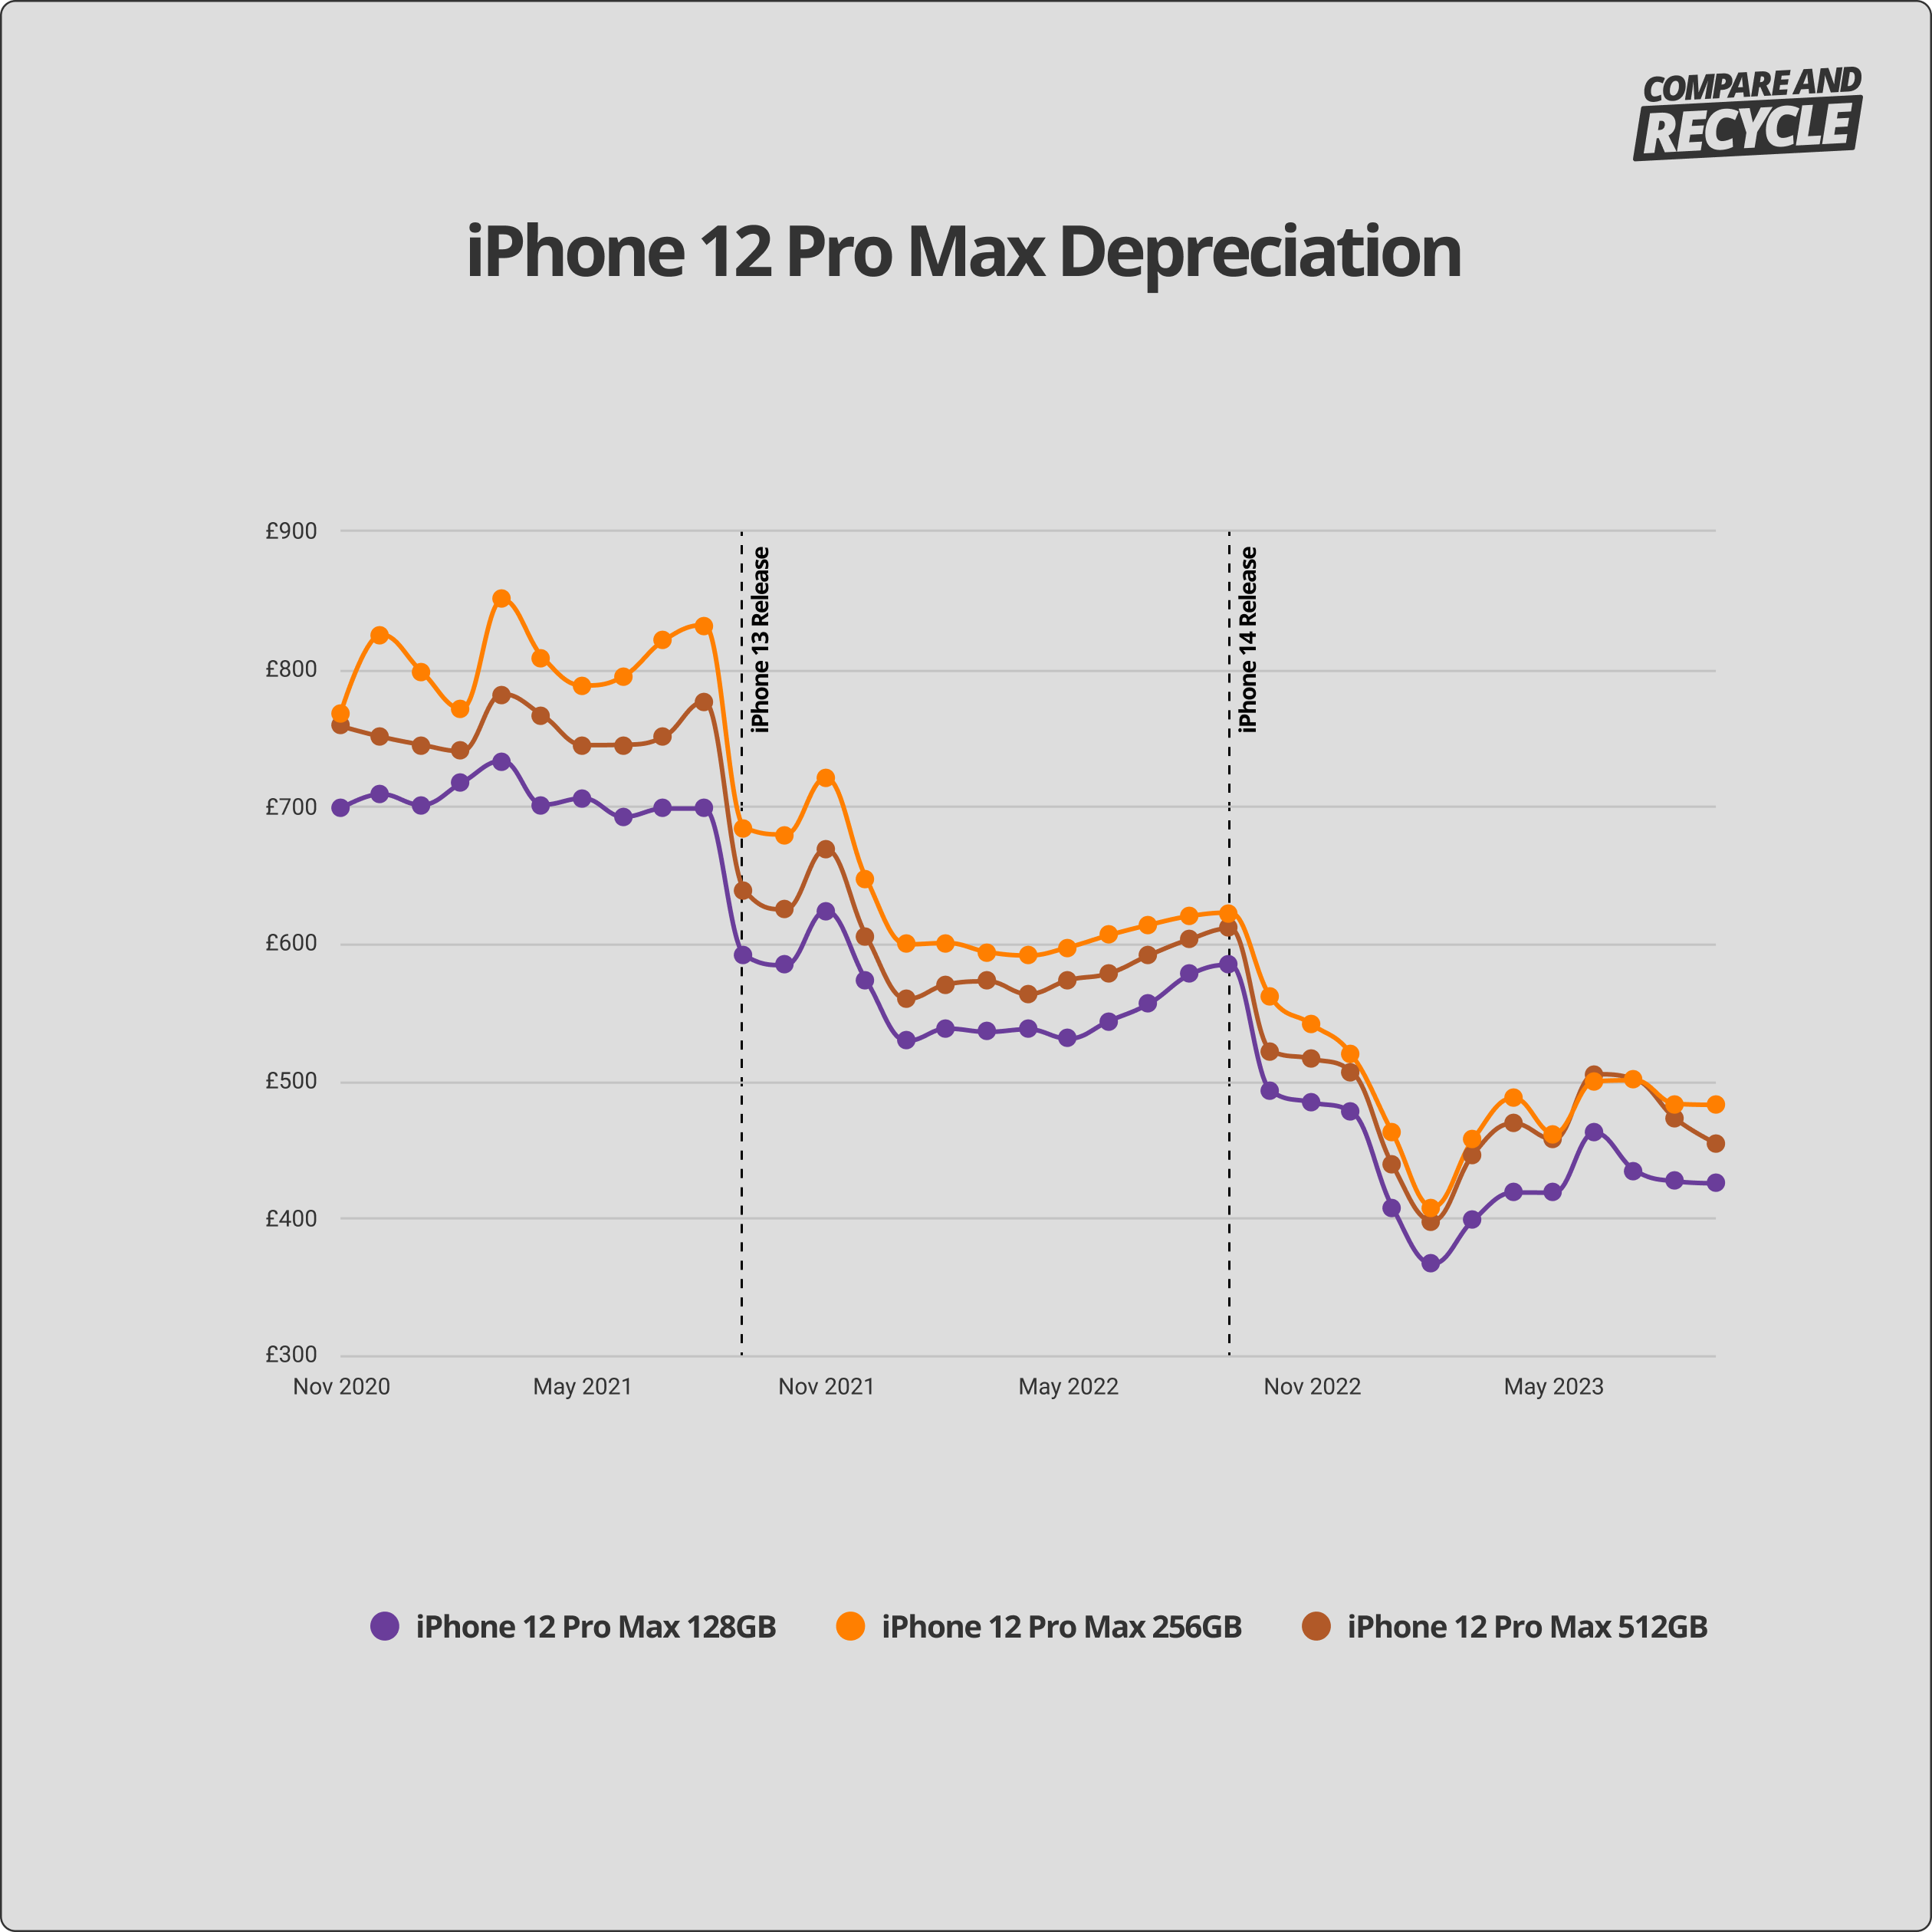 iPhone 12 Pro Max depreciation graph